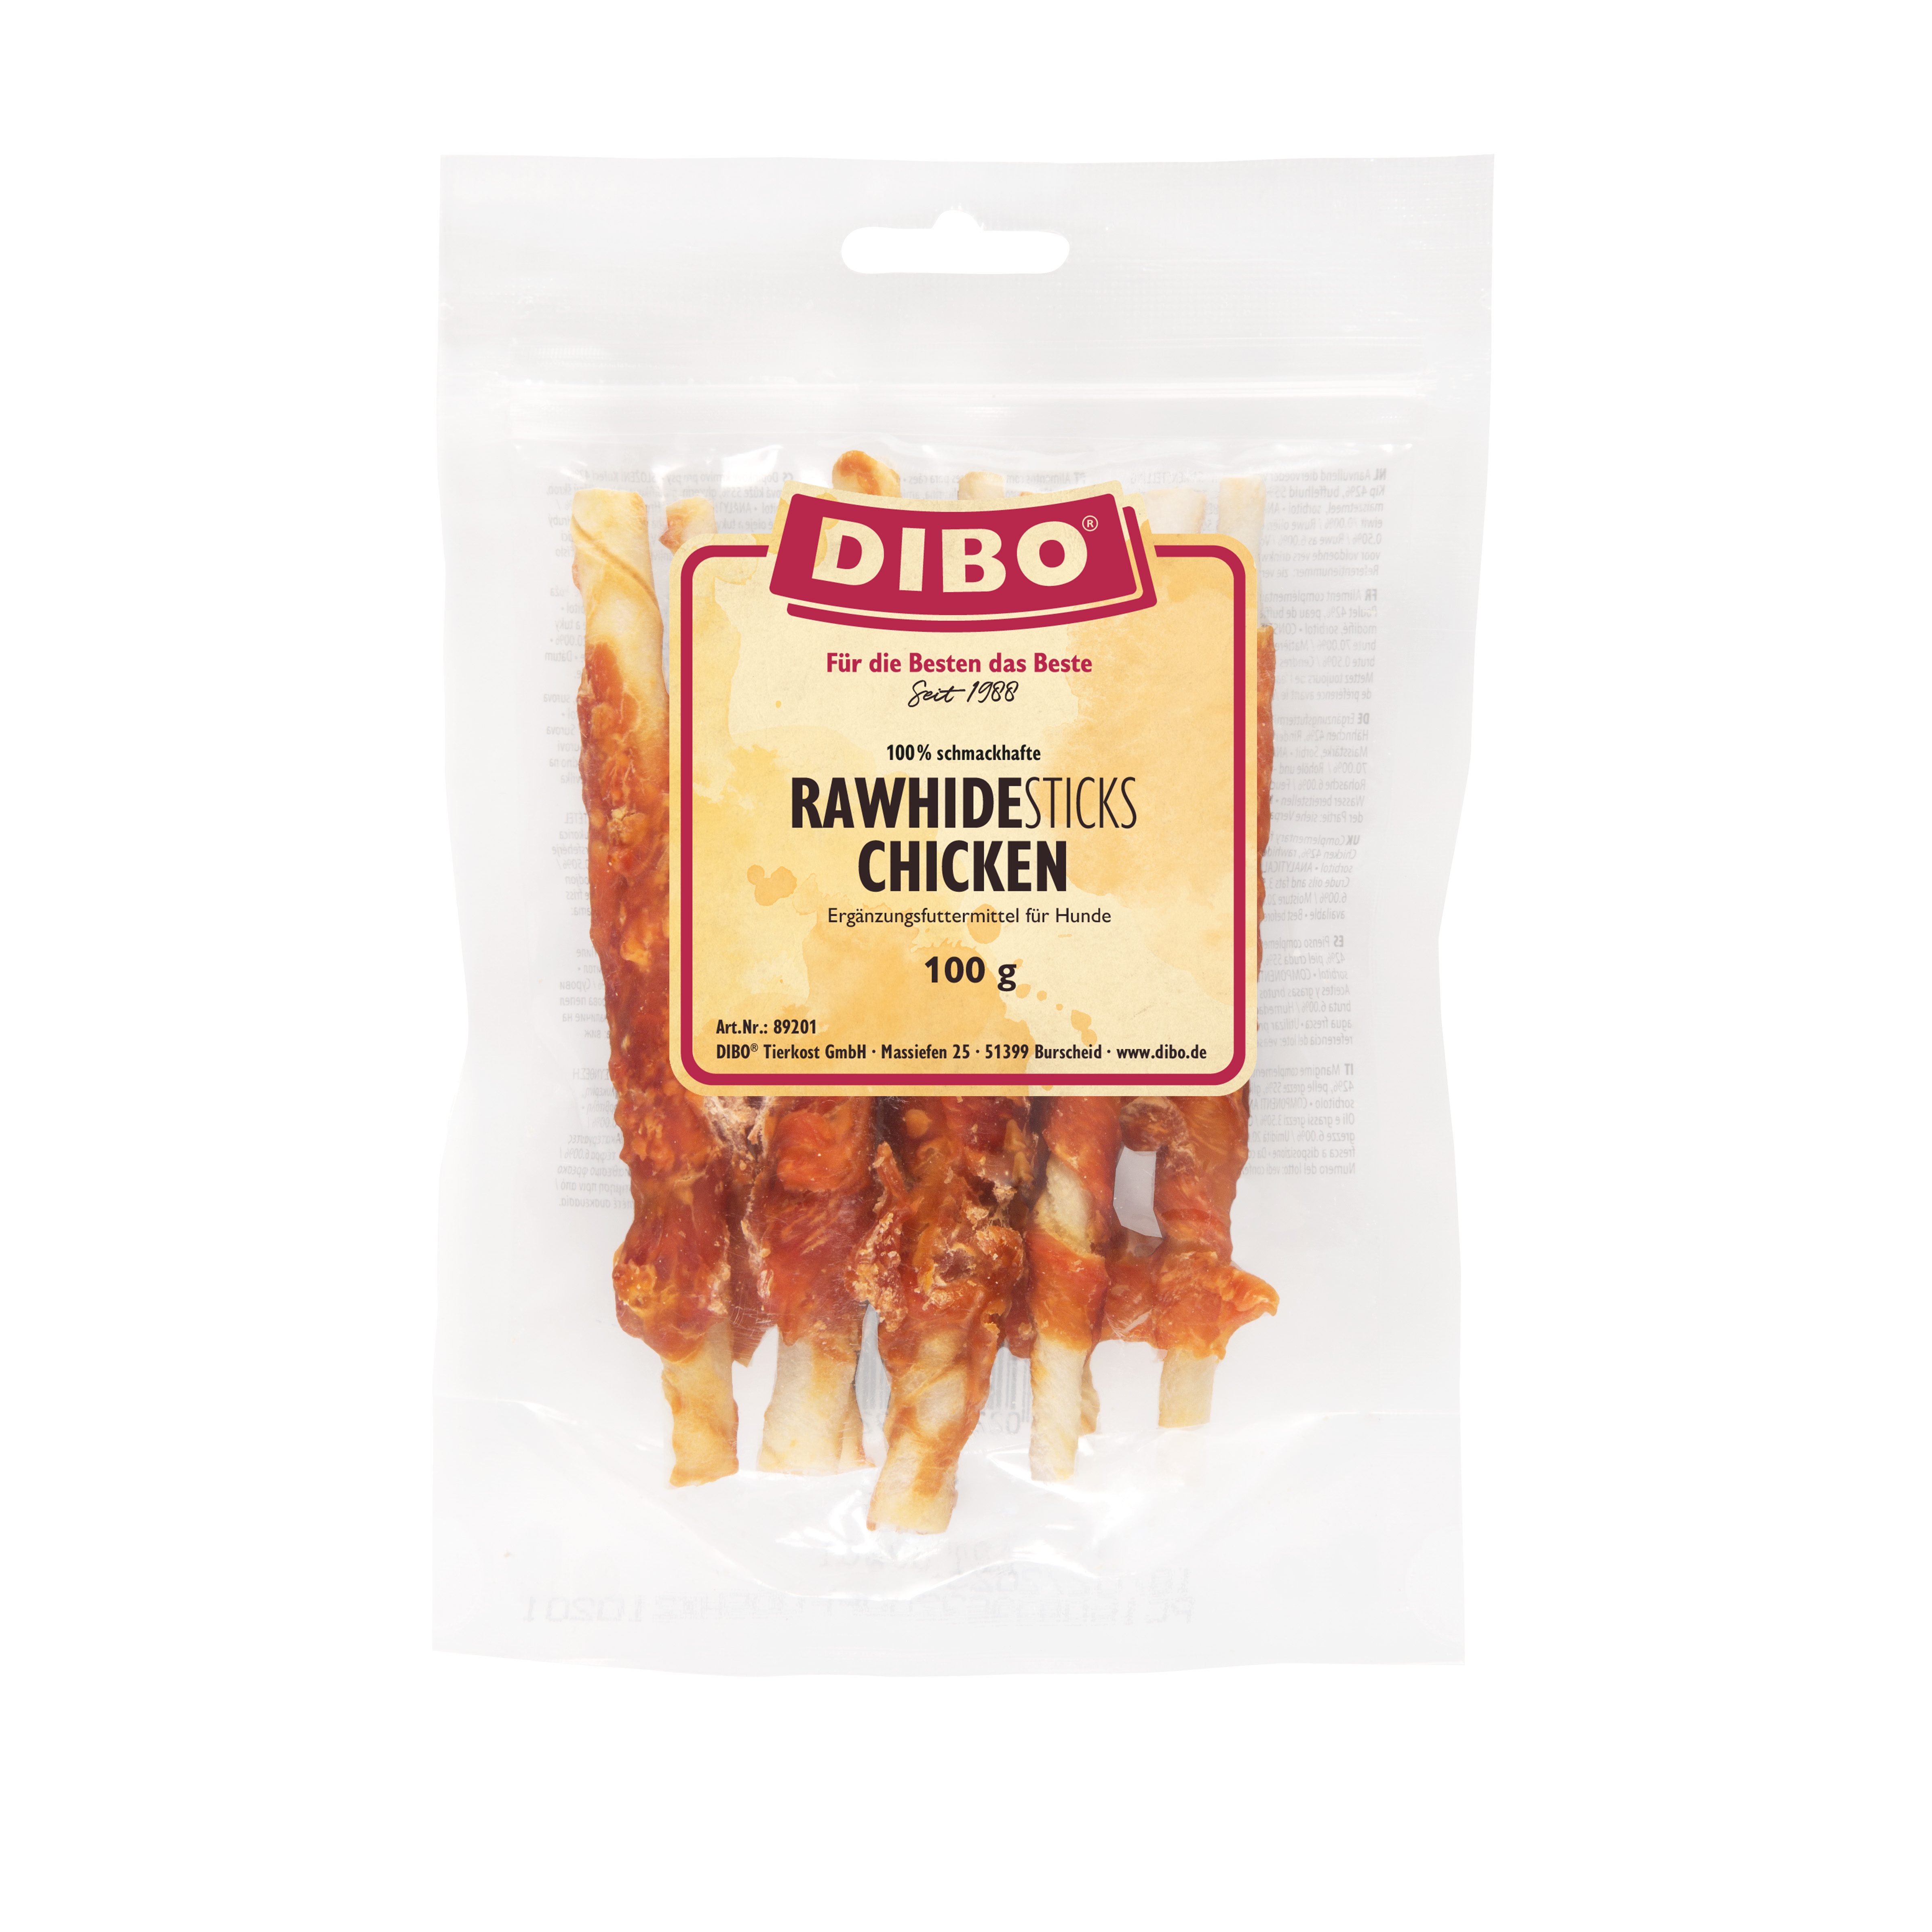 DIBO RawHide Sticks Chicken, 100g-Beutel